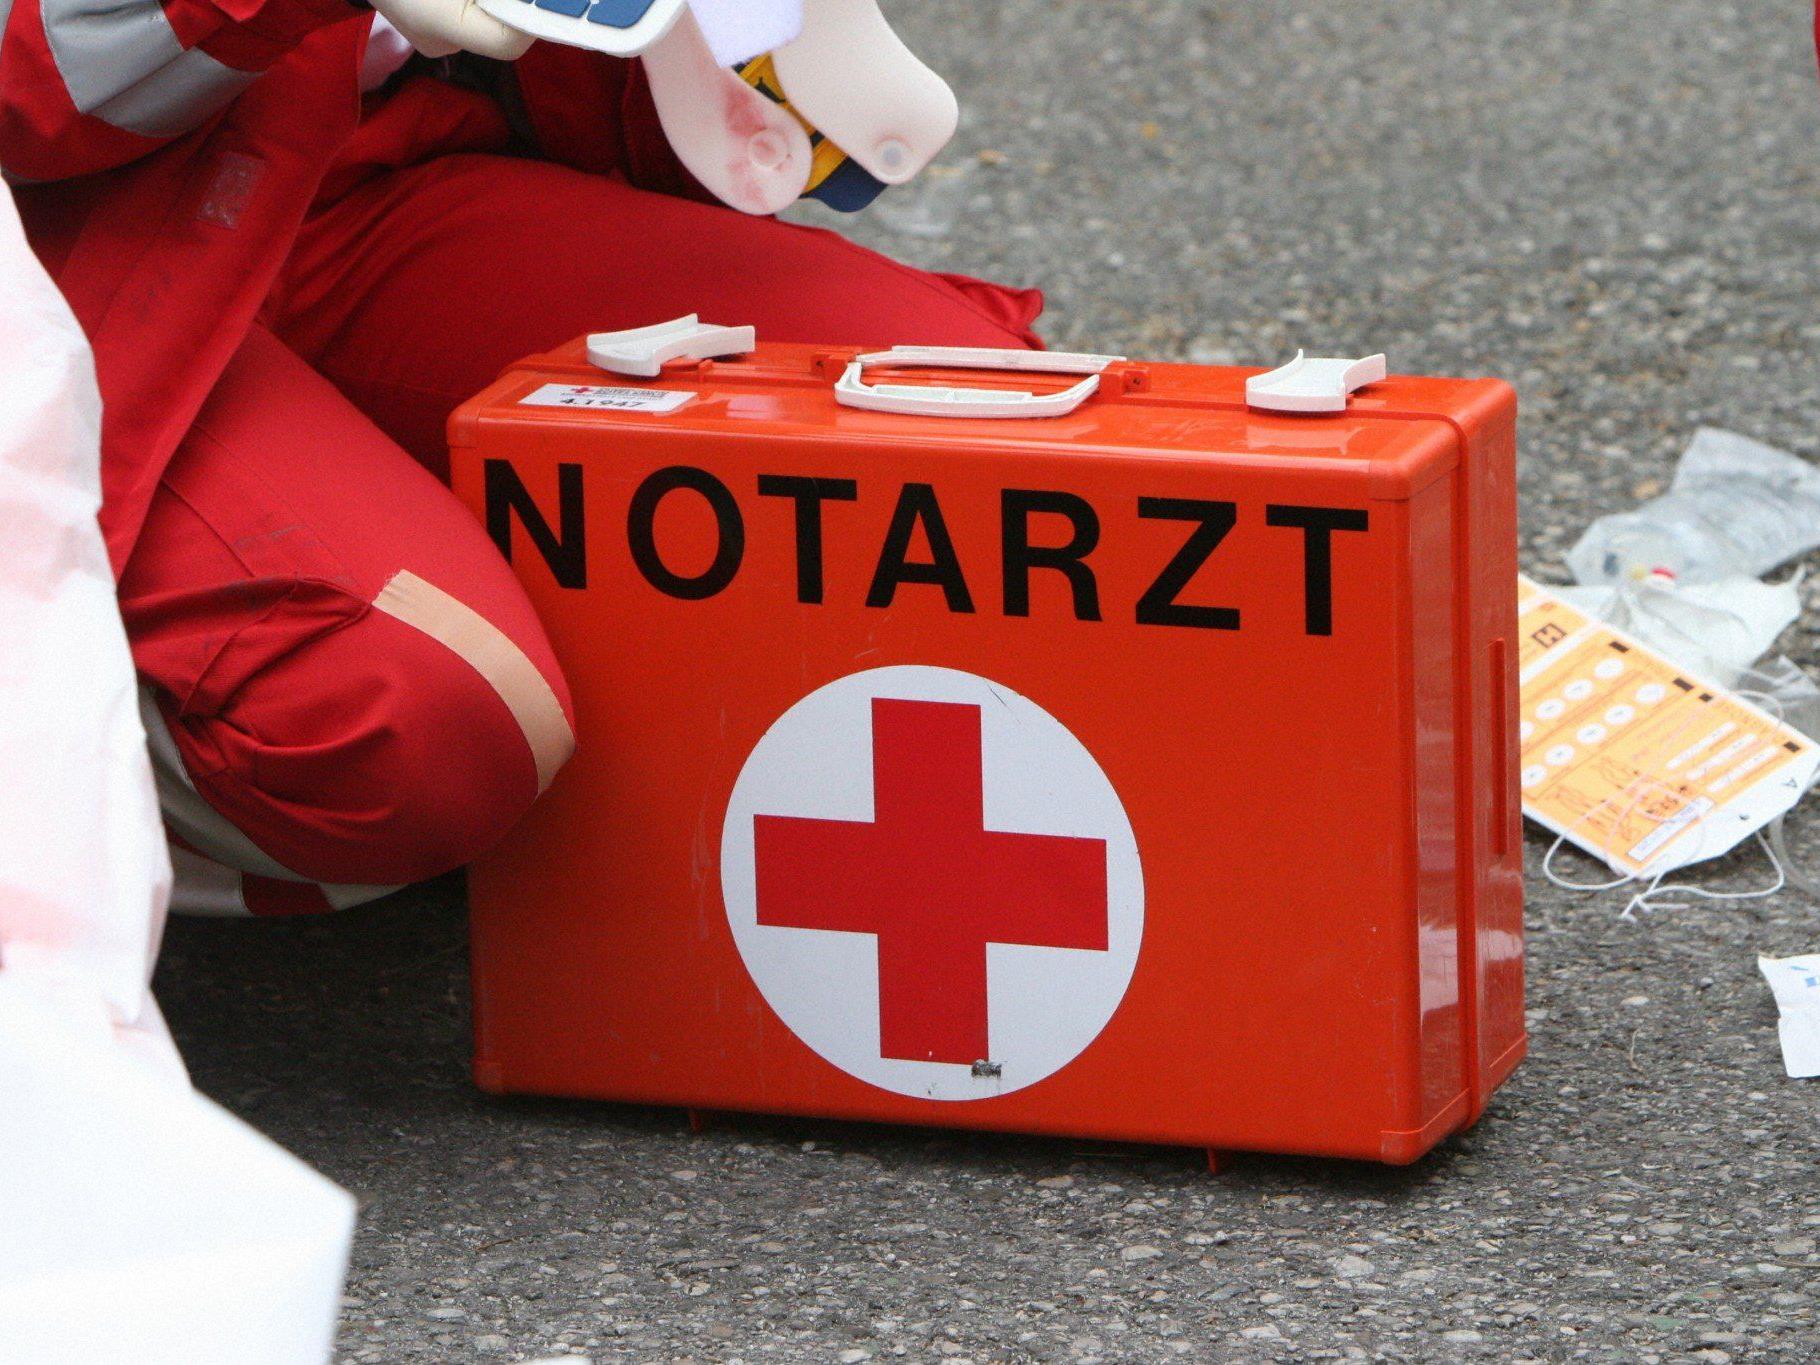 Bei einem Unfall im Bezirk Wiener Neustadt wurden eine 33-jährige Frau und ihre drei Kinder verletzt.